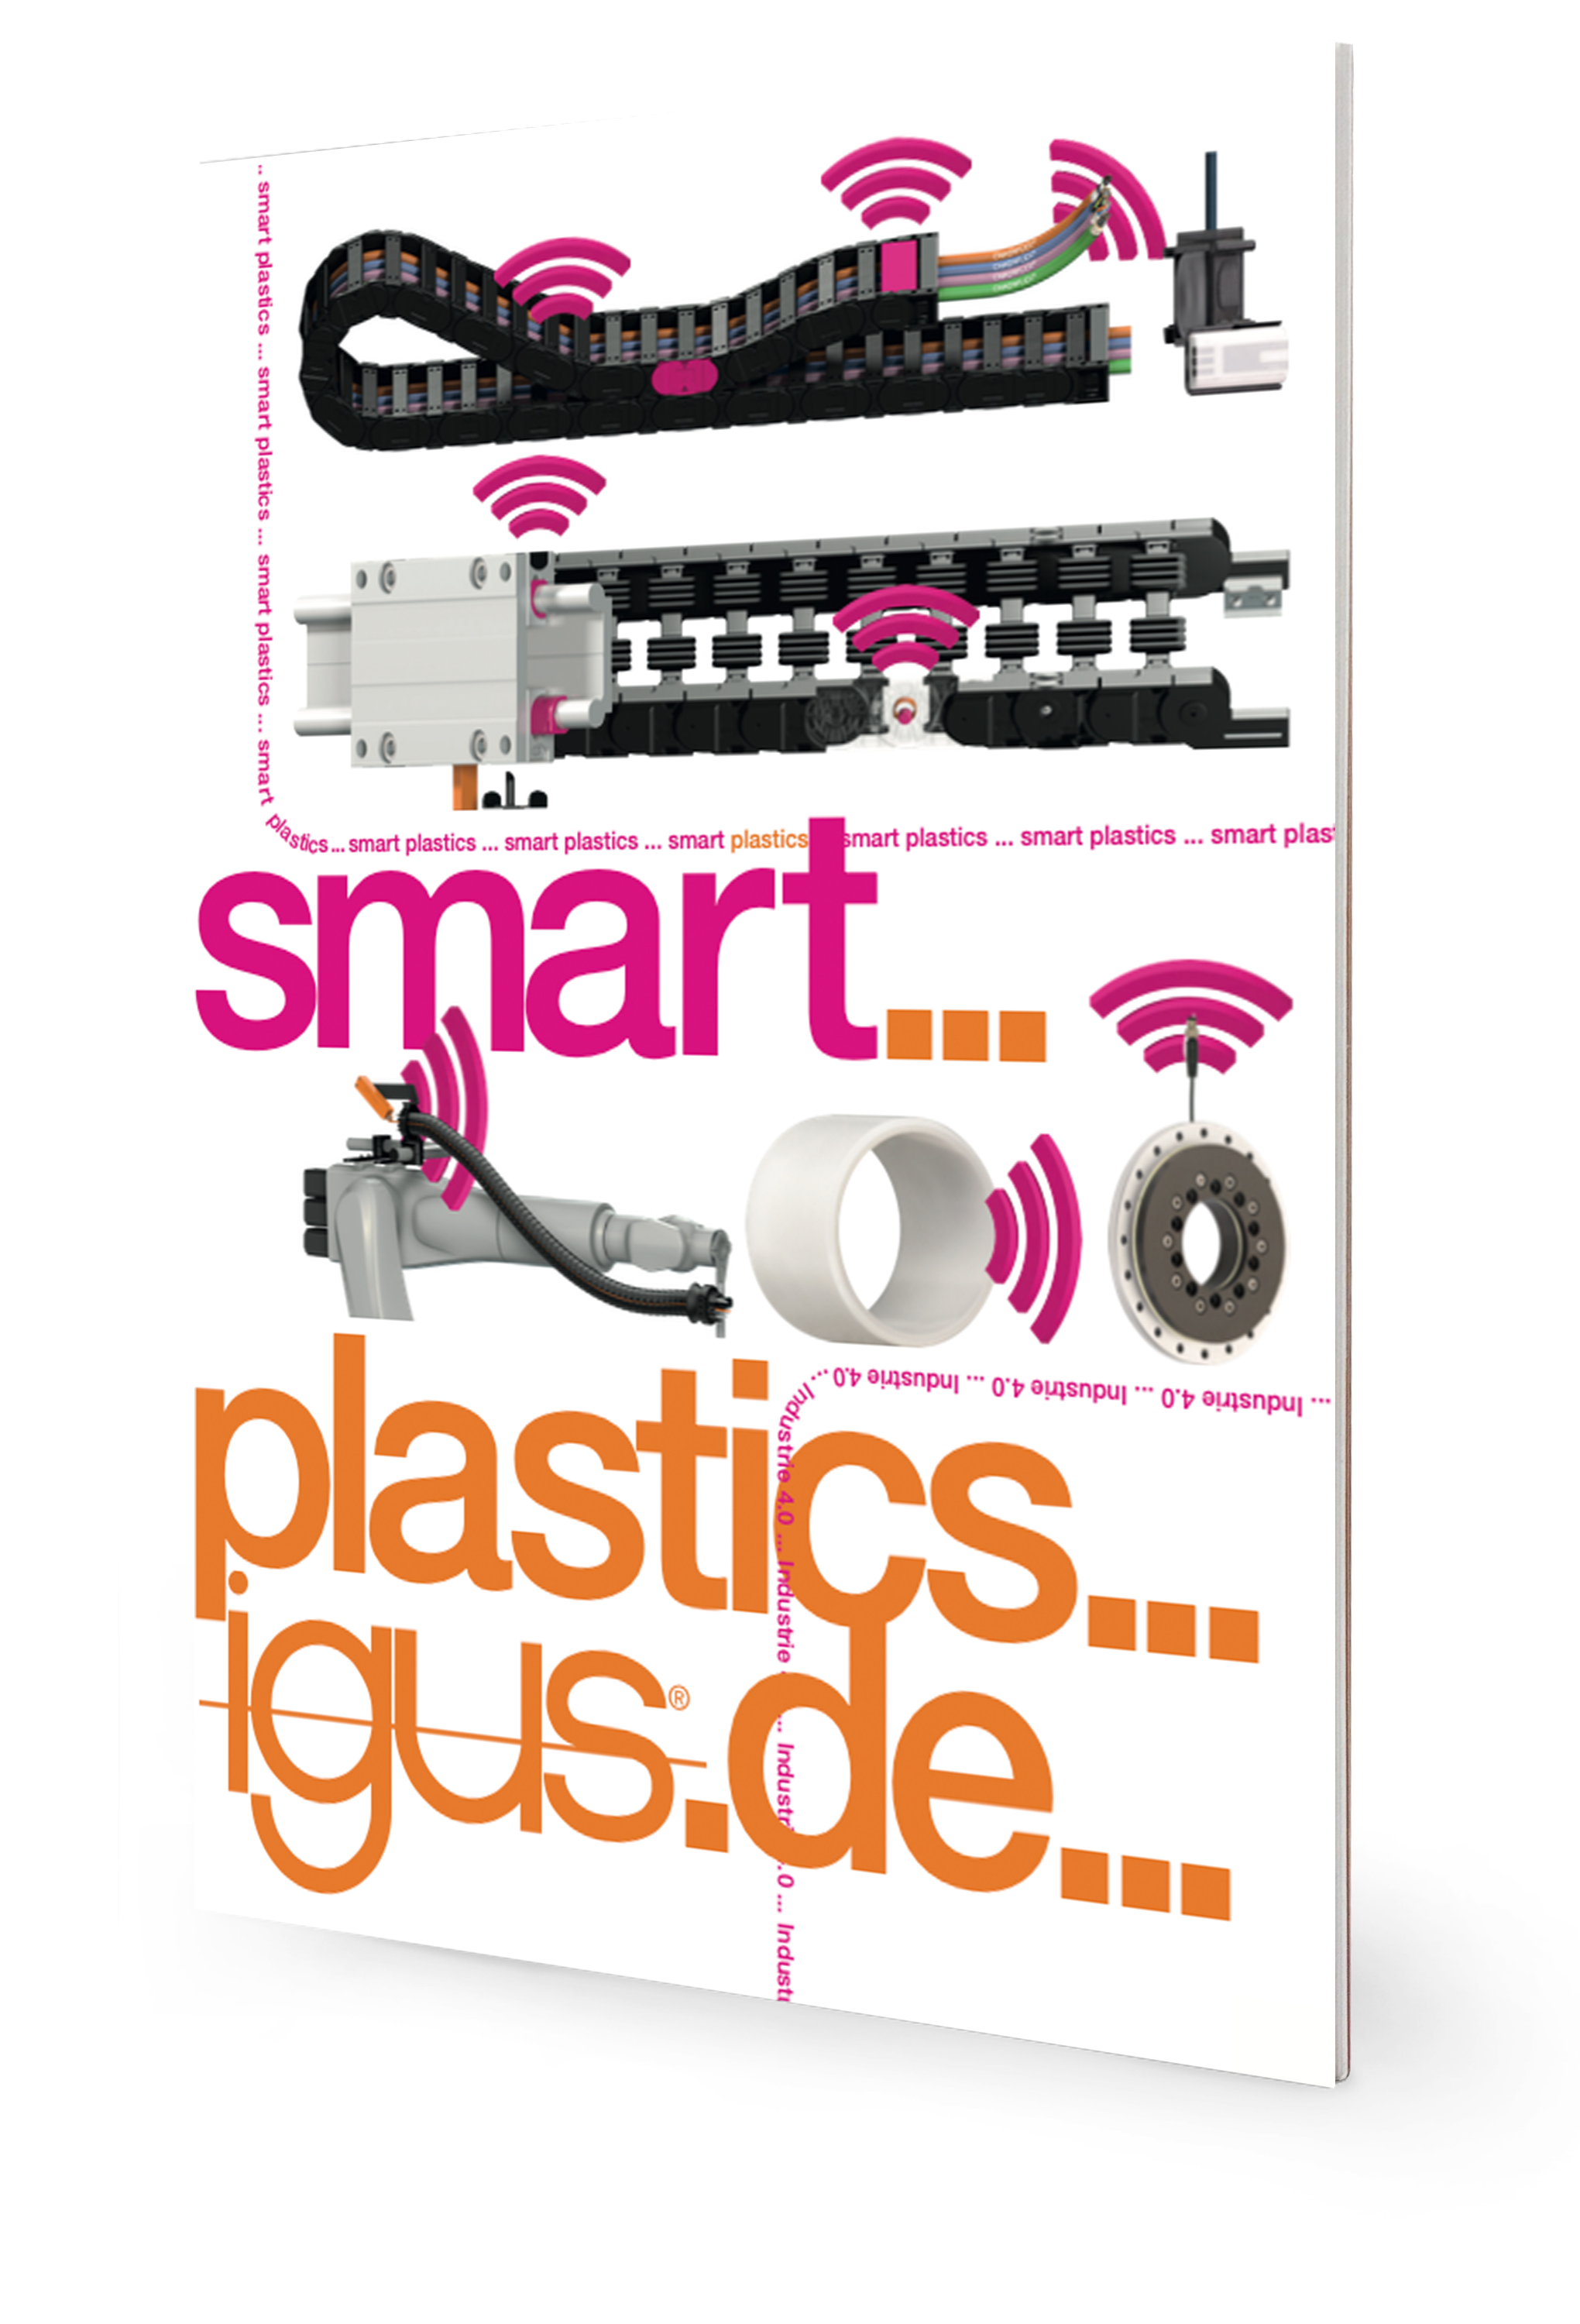 Mockup_smart plastics brochure_EN